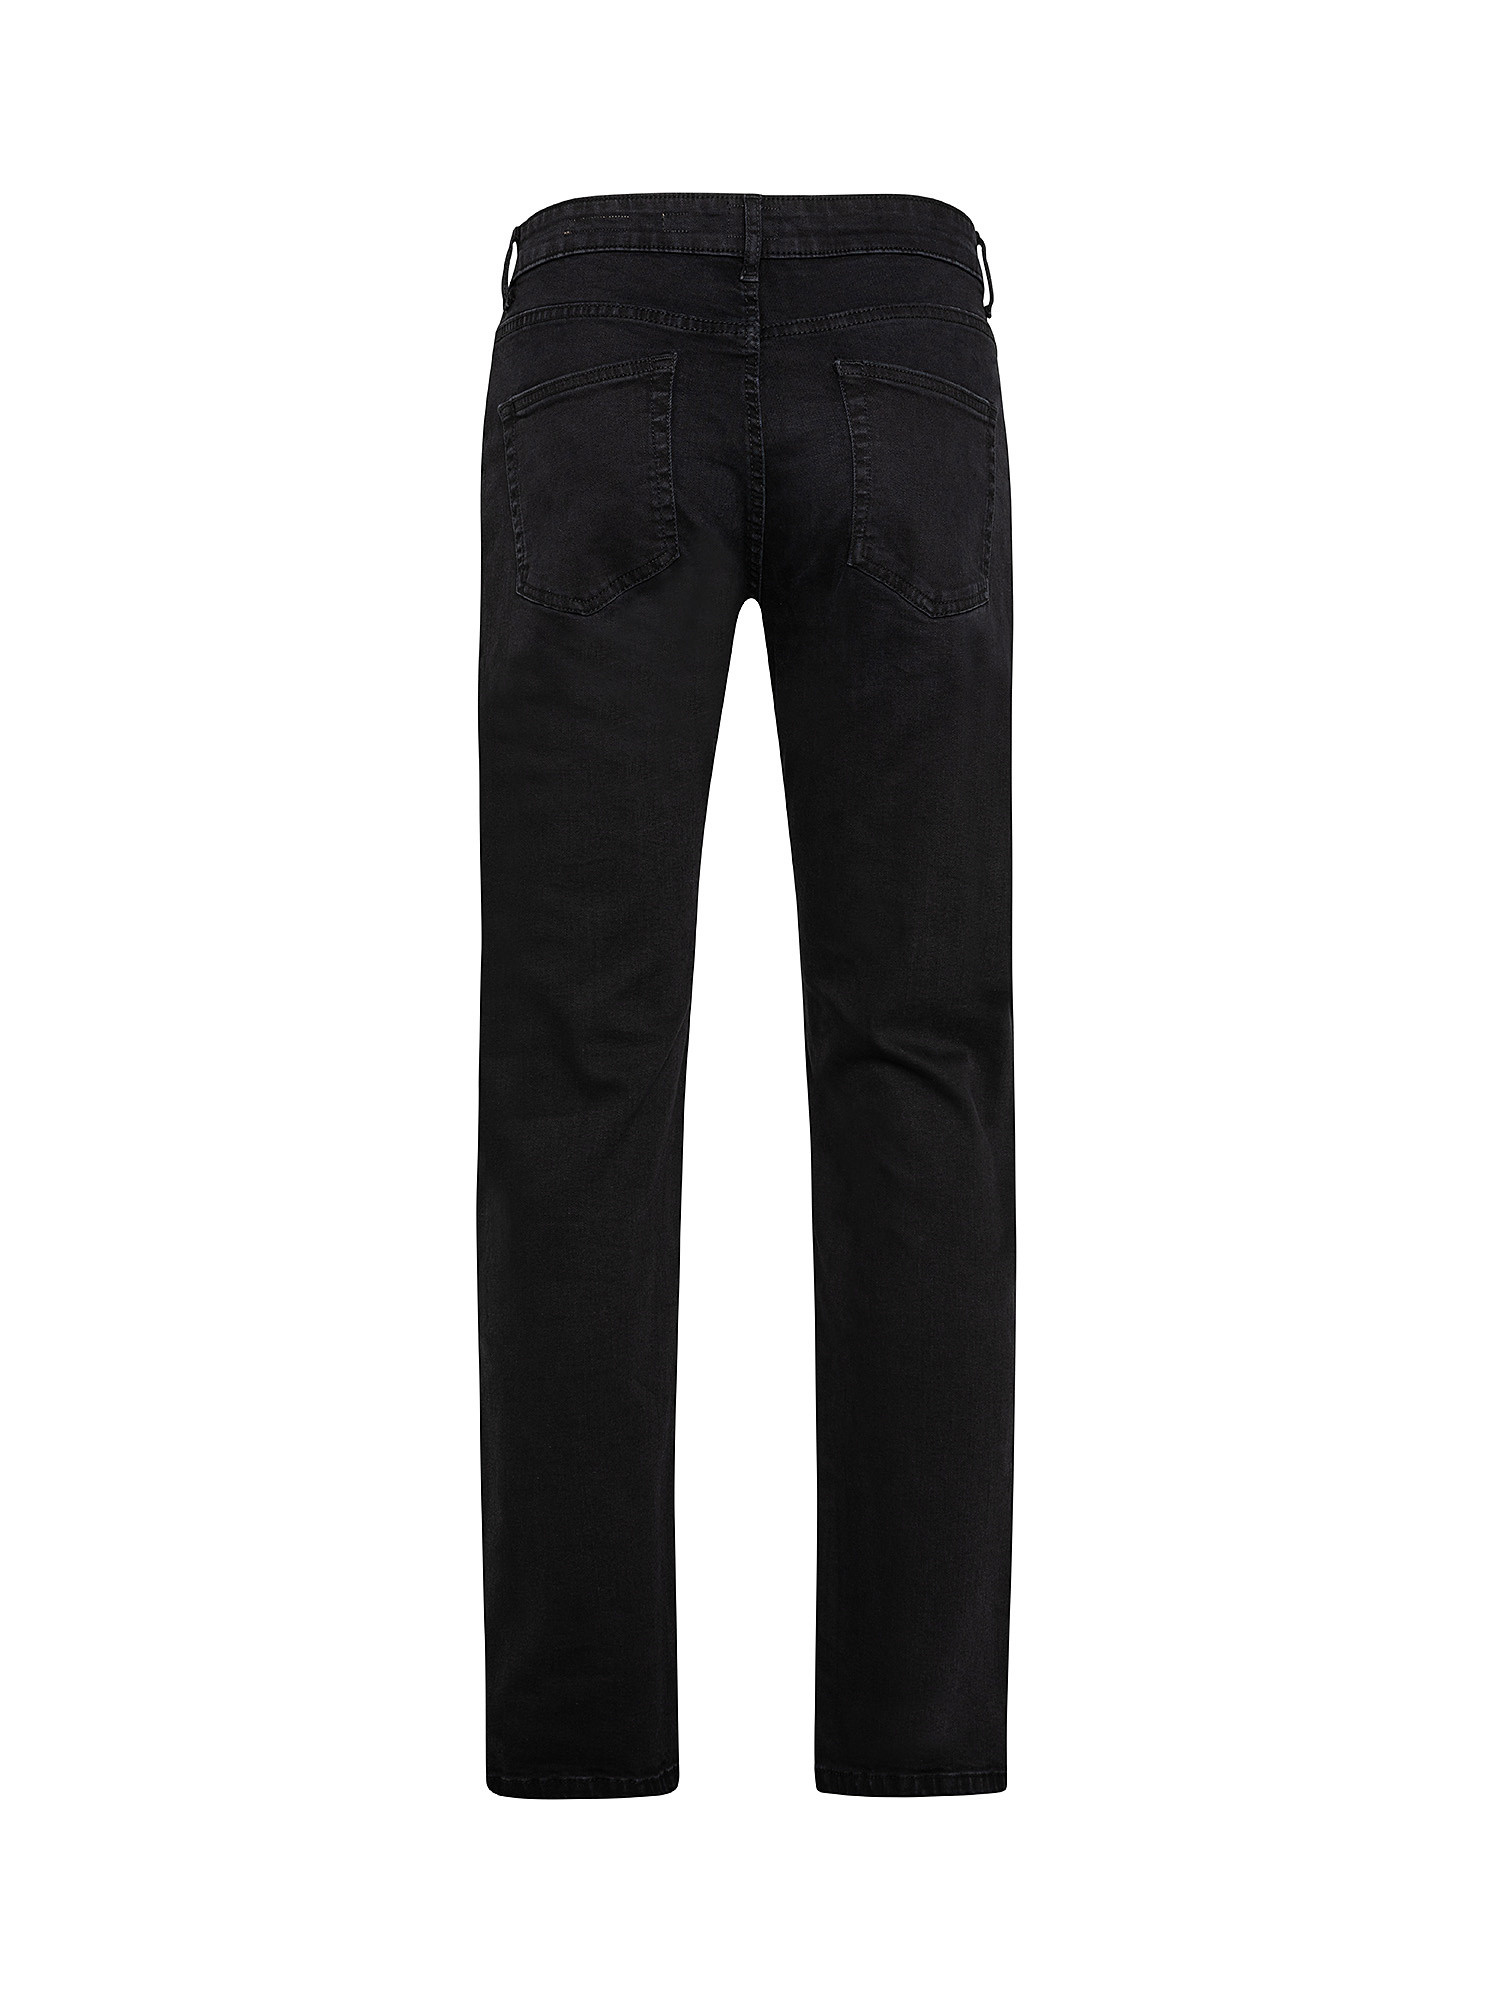 Five pocket jeans, Black, large image number 1